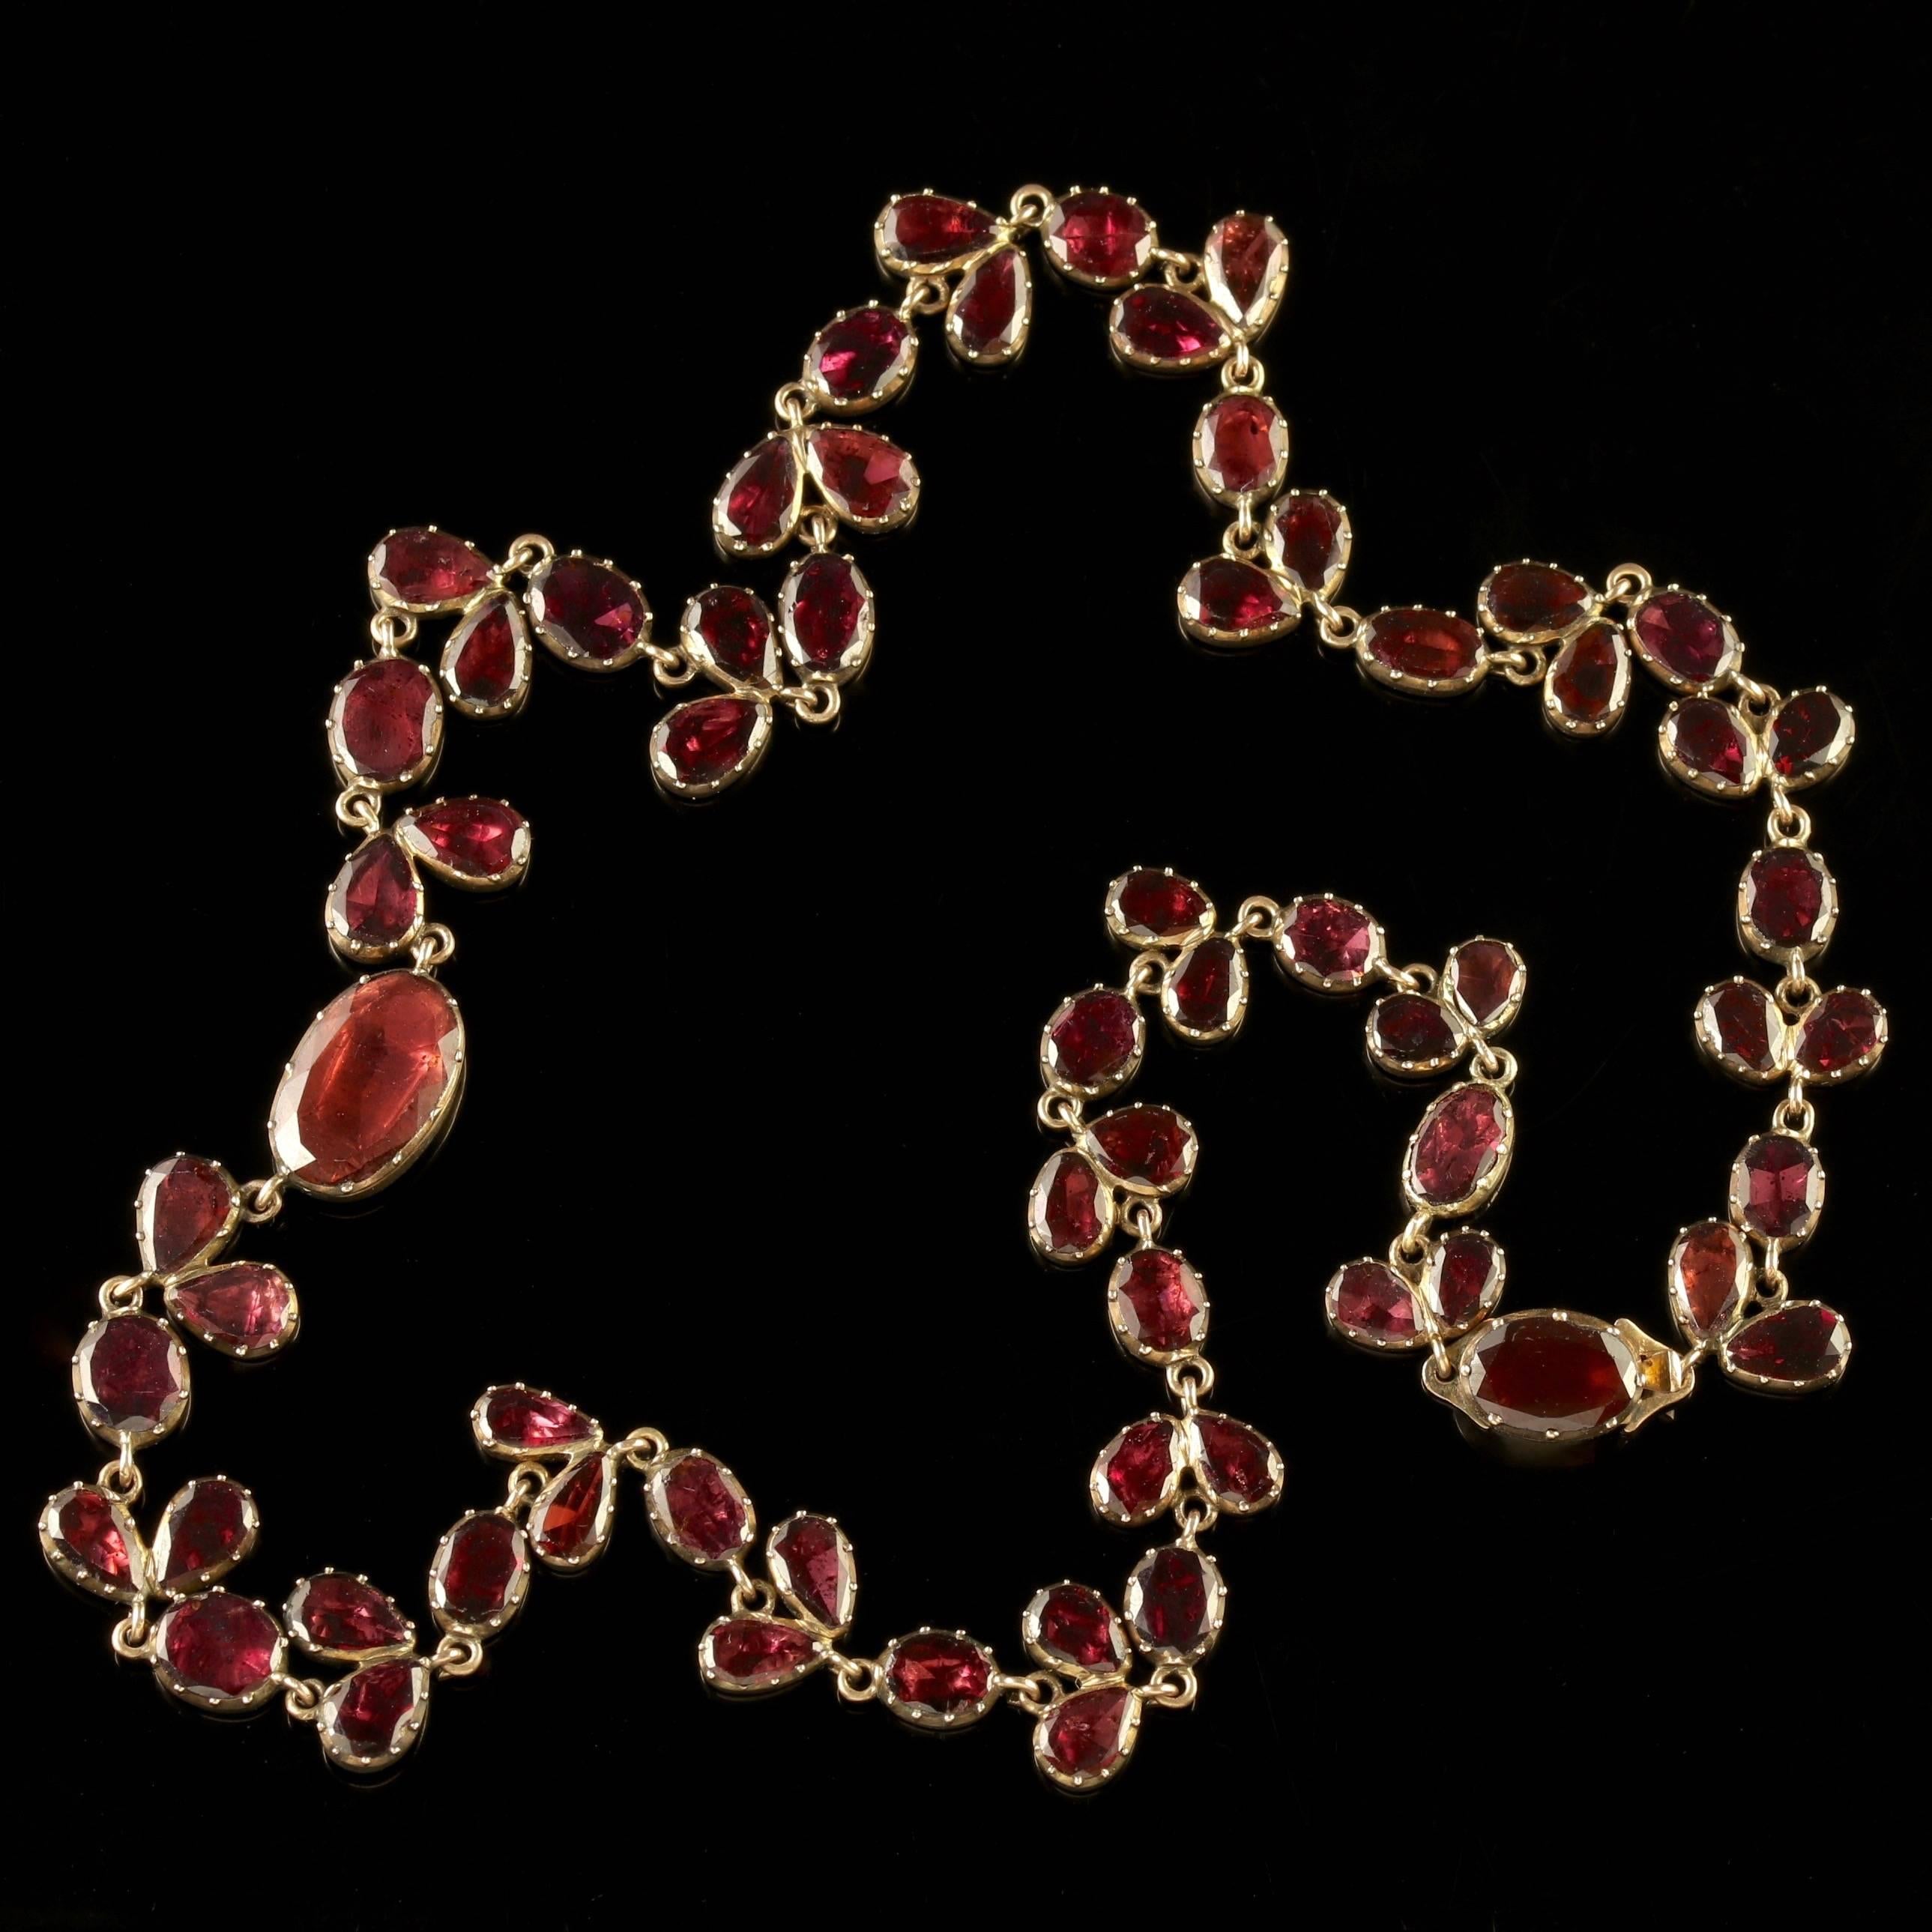 Women's Antique Georgian 18 Carat Gold Flat Cut Garnet Riviere Necklace, circa 1790